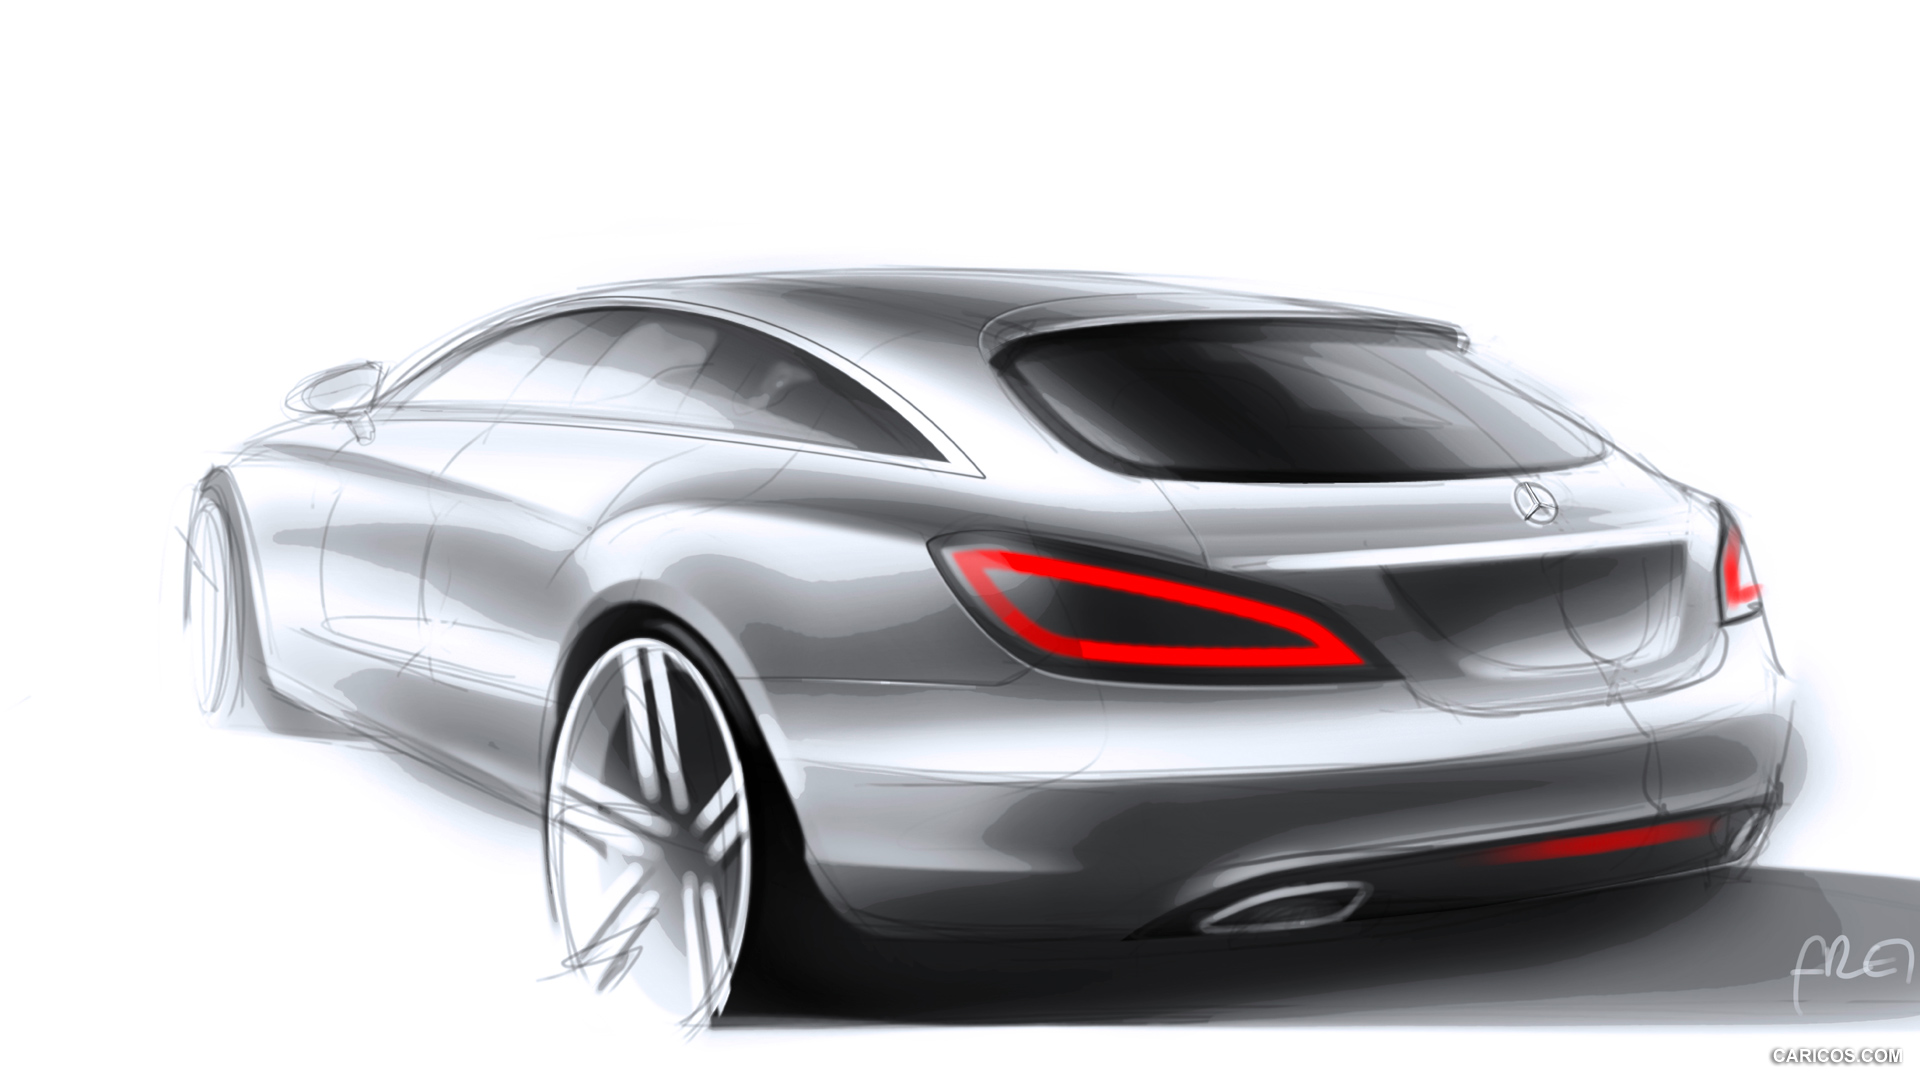 2013 Mercedes-Benz CLS Shooting Brake - Design Sketch, #139 of 184